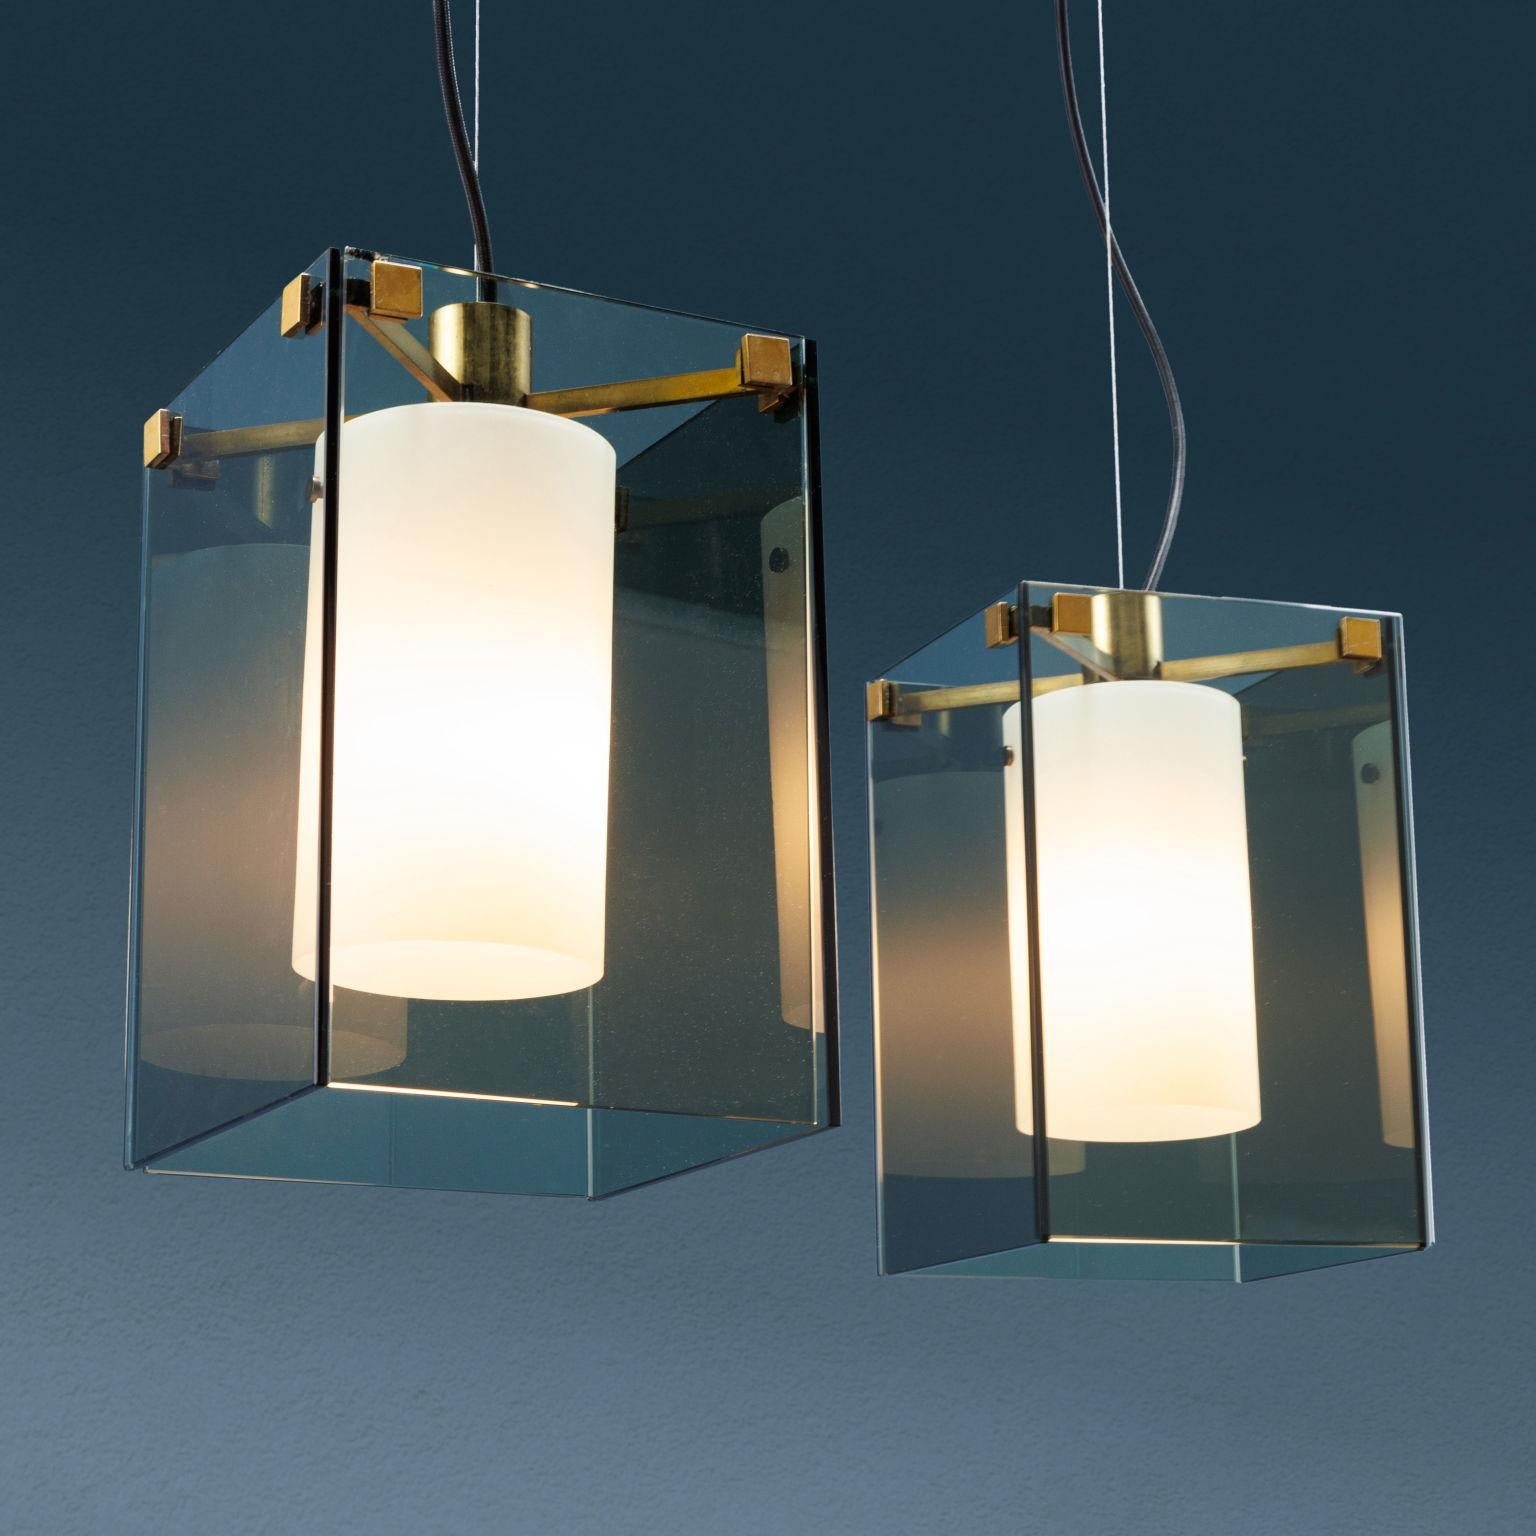 Due lampade da soffitto modello '2211' di Max Ingrand per FontanaArte. Corpo in cristalli grigi, schermo in vetro diffusore bianco satinato, montatura in
ottone nichelato. Lampade anni '50 '60 in ottime condizioni originali.